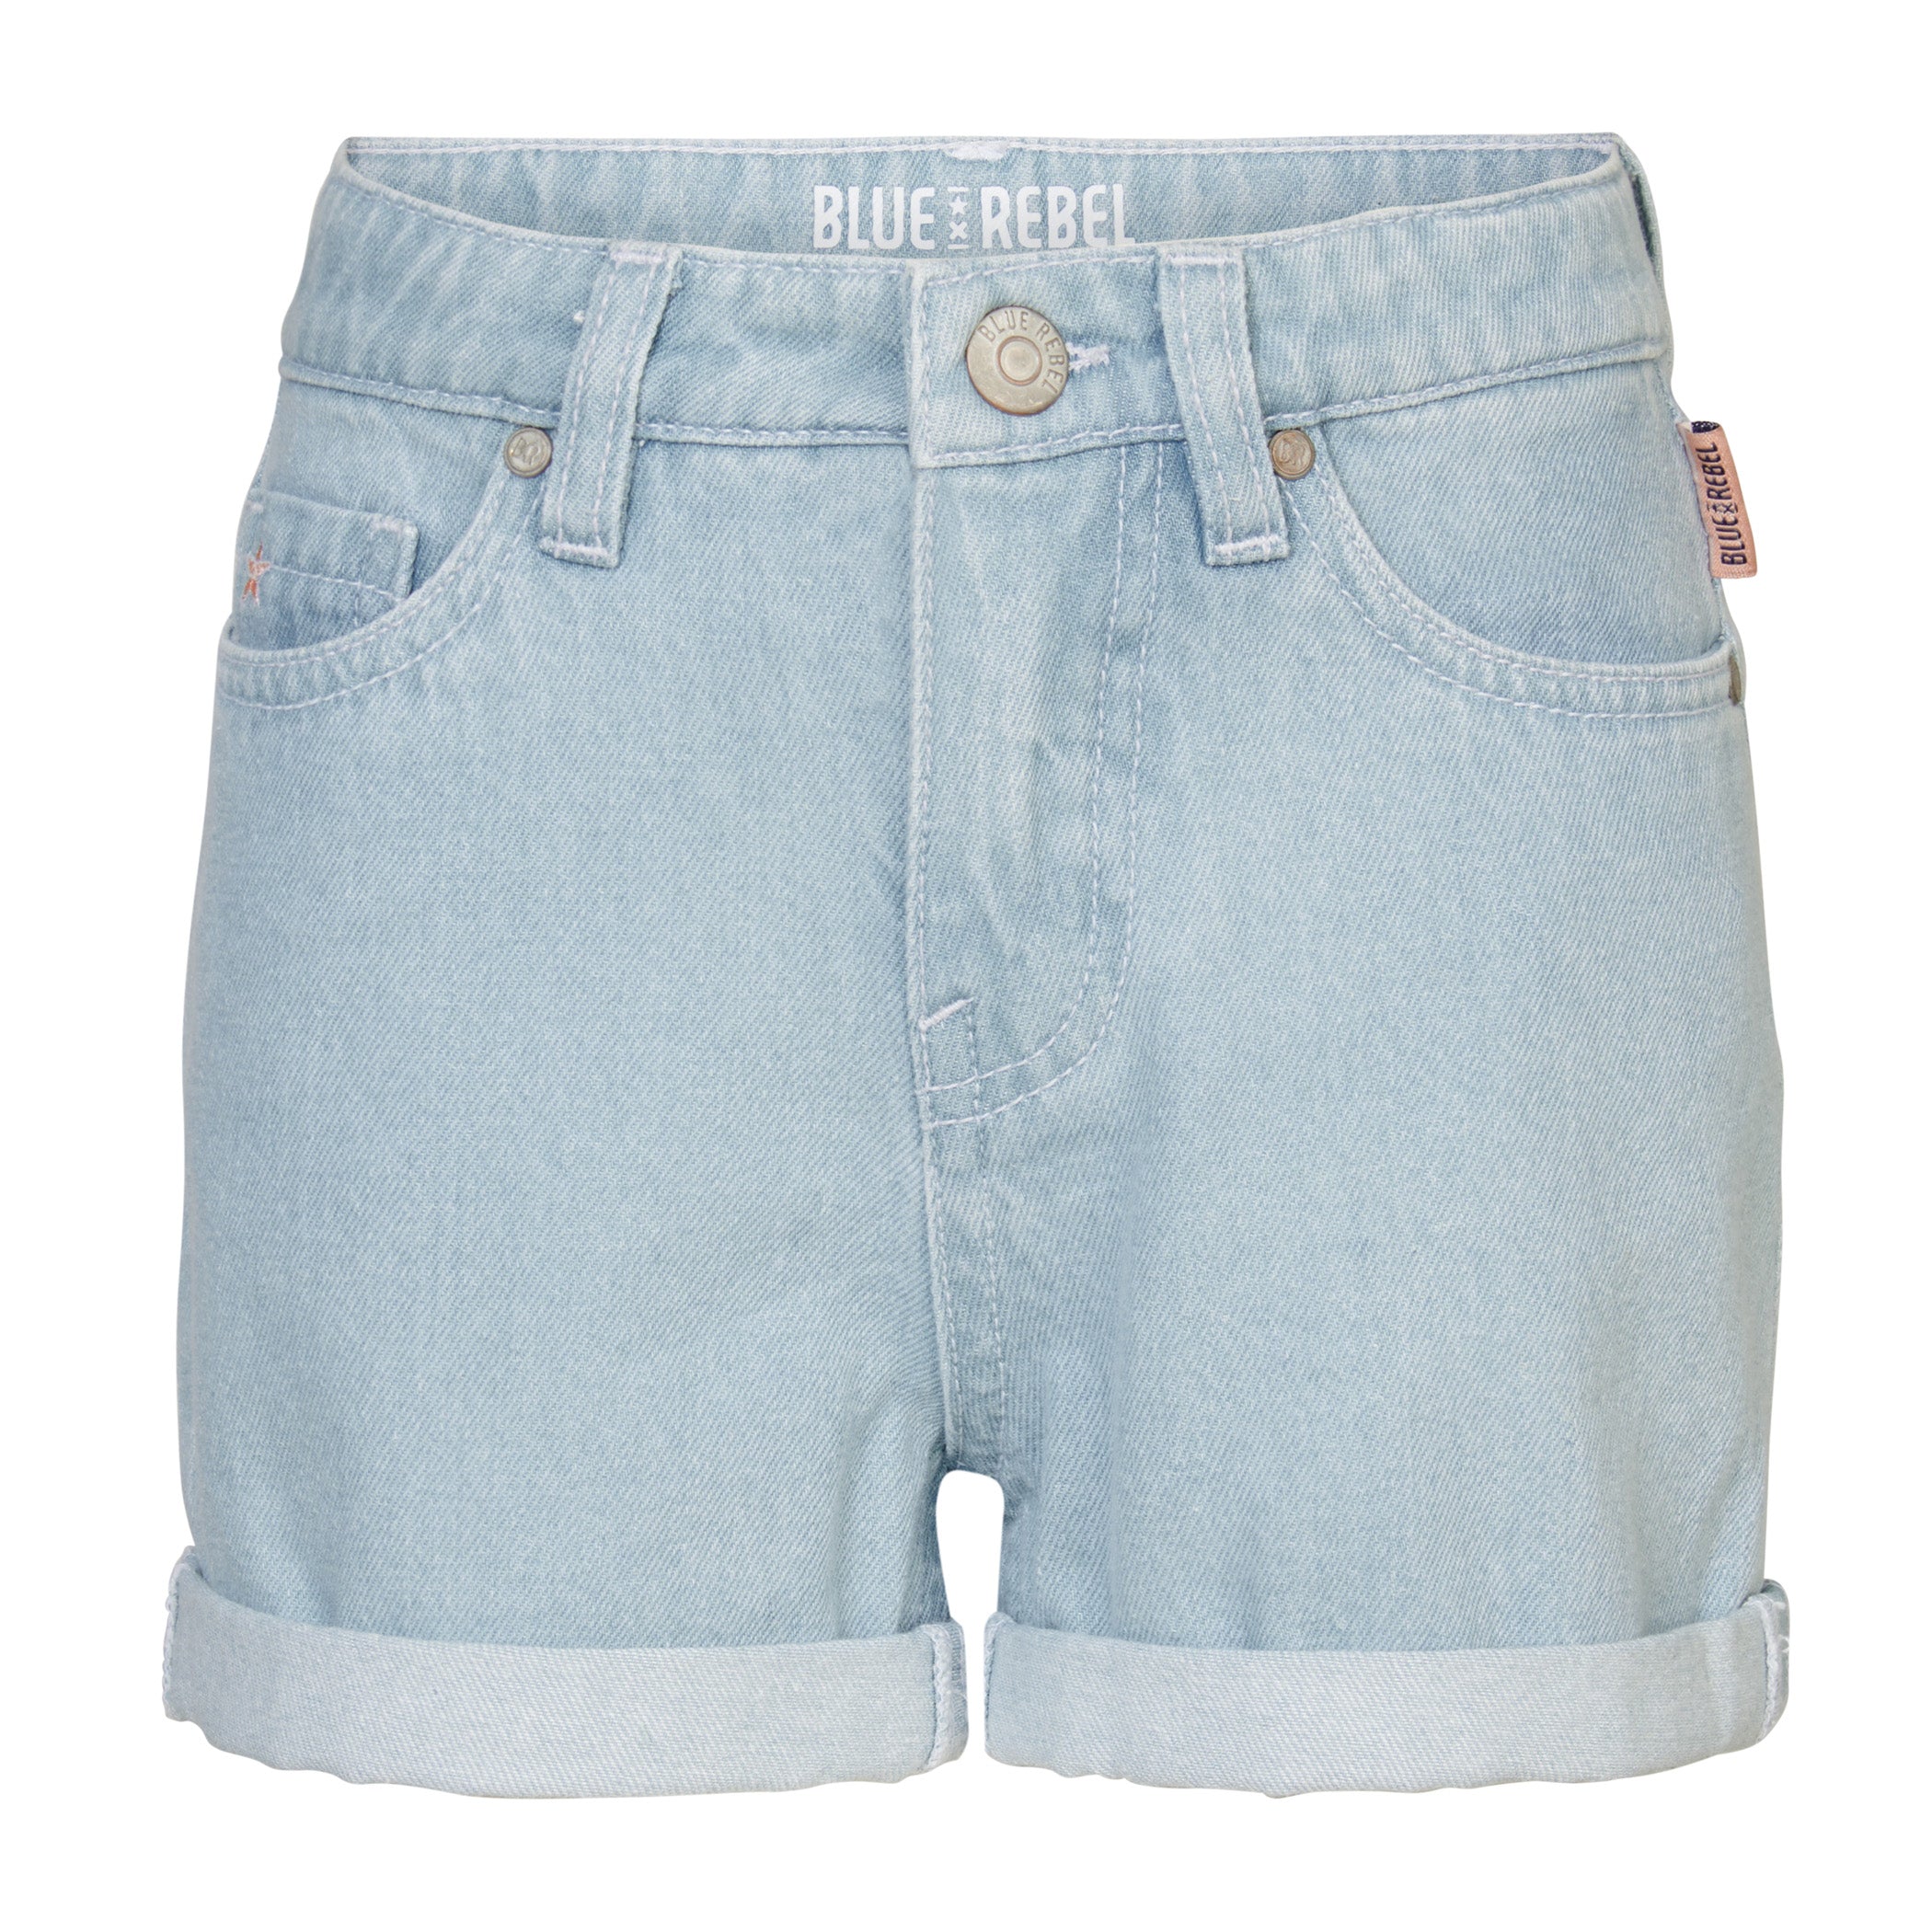 Meisjes Girls Denim Pants Short Loose fit Imogen van  in de kleur Denim Light Blue in maat 176.